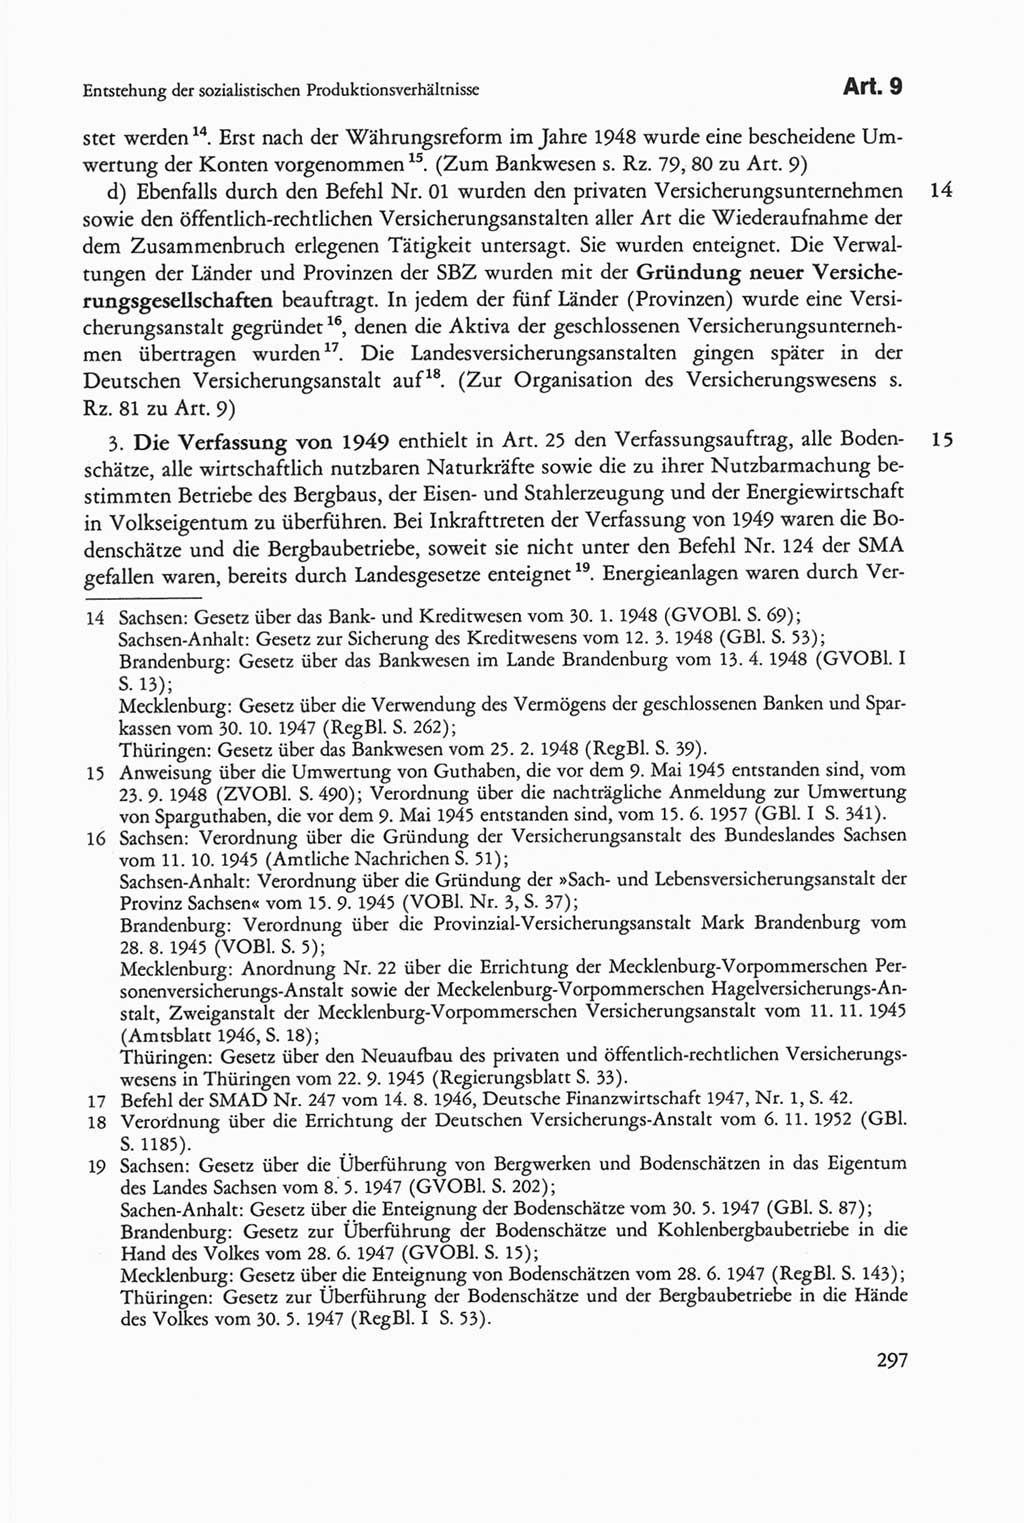 Die sozialistische Verfassung der Deutschen Demokratischen Republik (DDR), Kommentar mit einem Nachtrag 1997, Seite 297 (Soz. Verf. DDR Komm. Nachtr. 1997, S. 297)